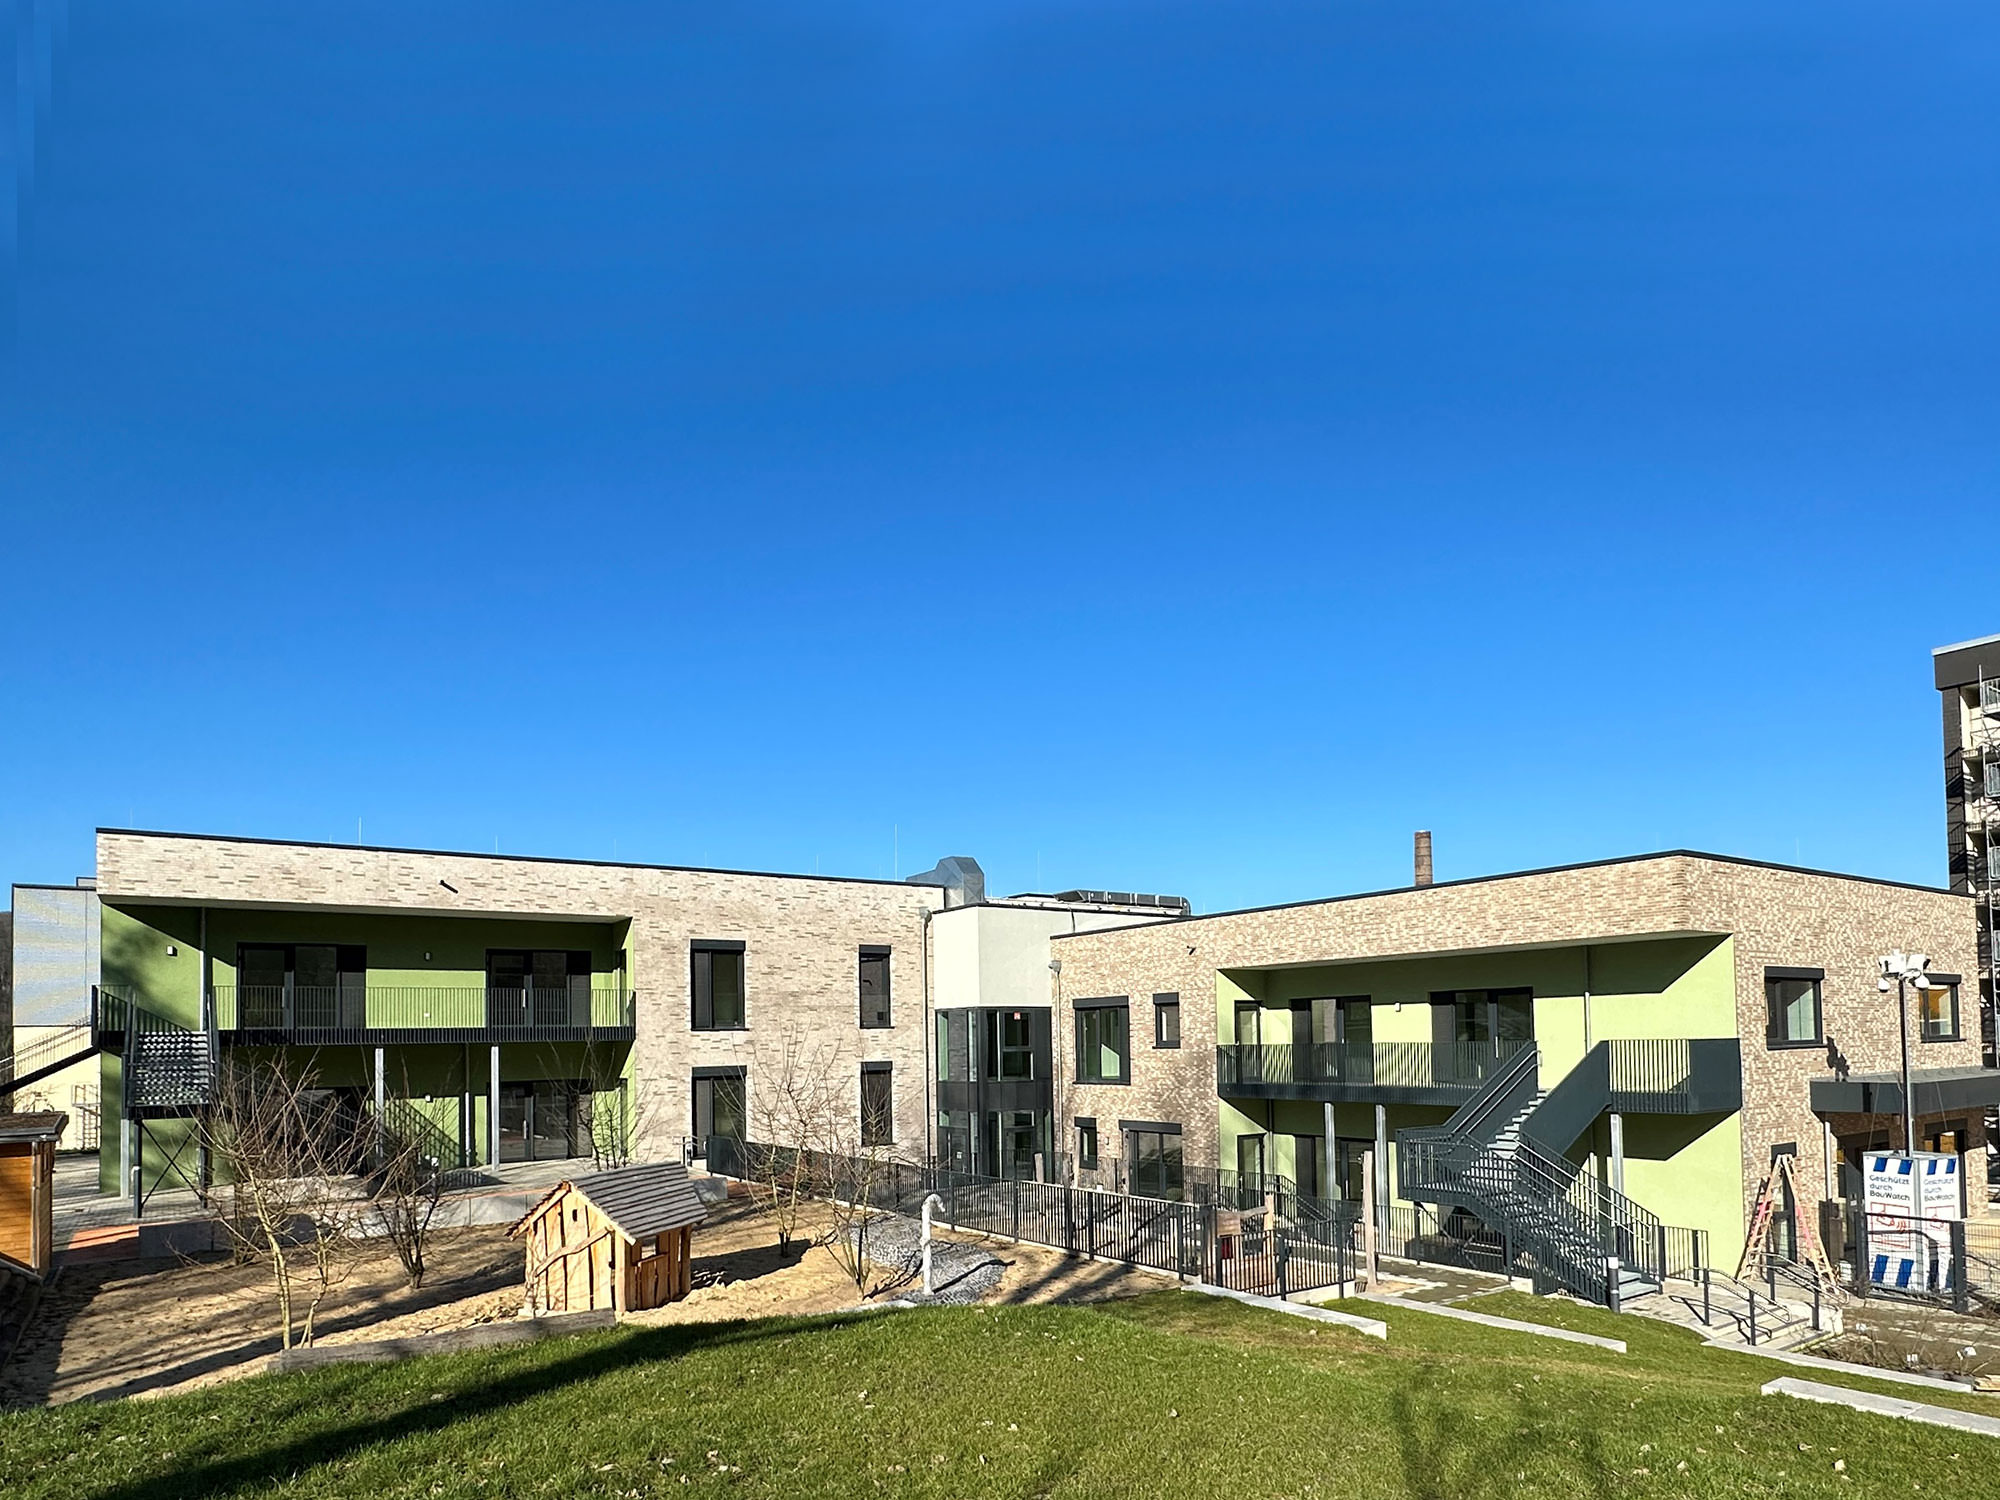 Neubau , Kindertagesstätte, Wuppertal- ah-architektur.de | Alisic-Haverkamp – Wir verfolgen das Ziel, funktionelle, kostenbewusste und ambitioniert gestaltete Architektur zu schaffen, die einen ah-Effekt auslöst.